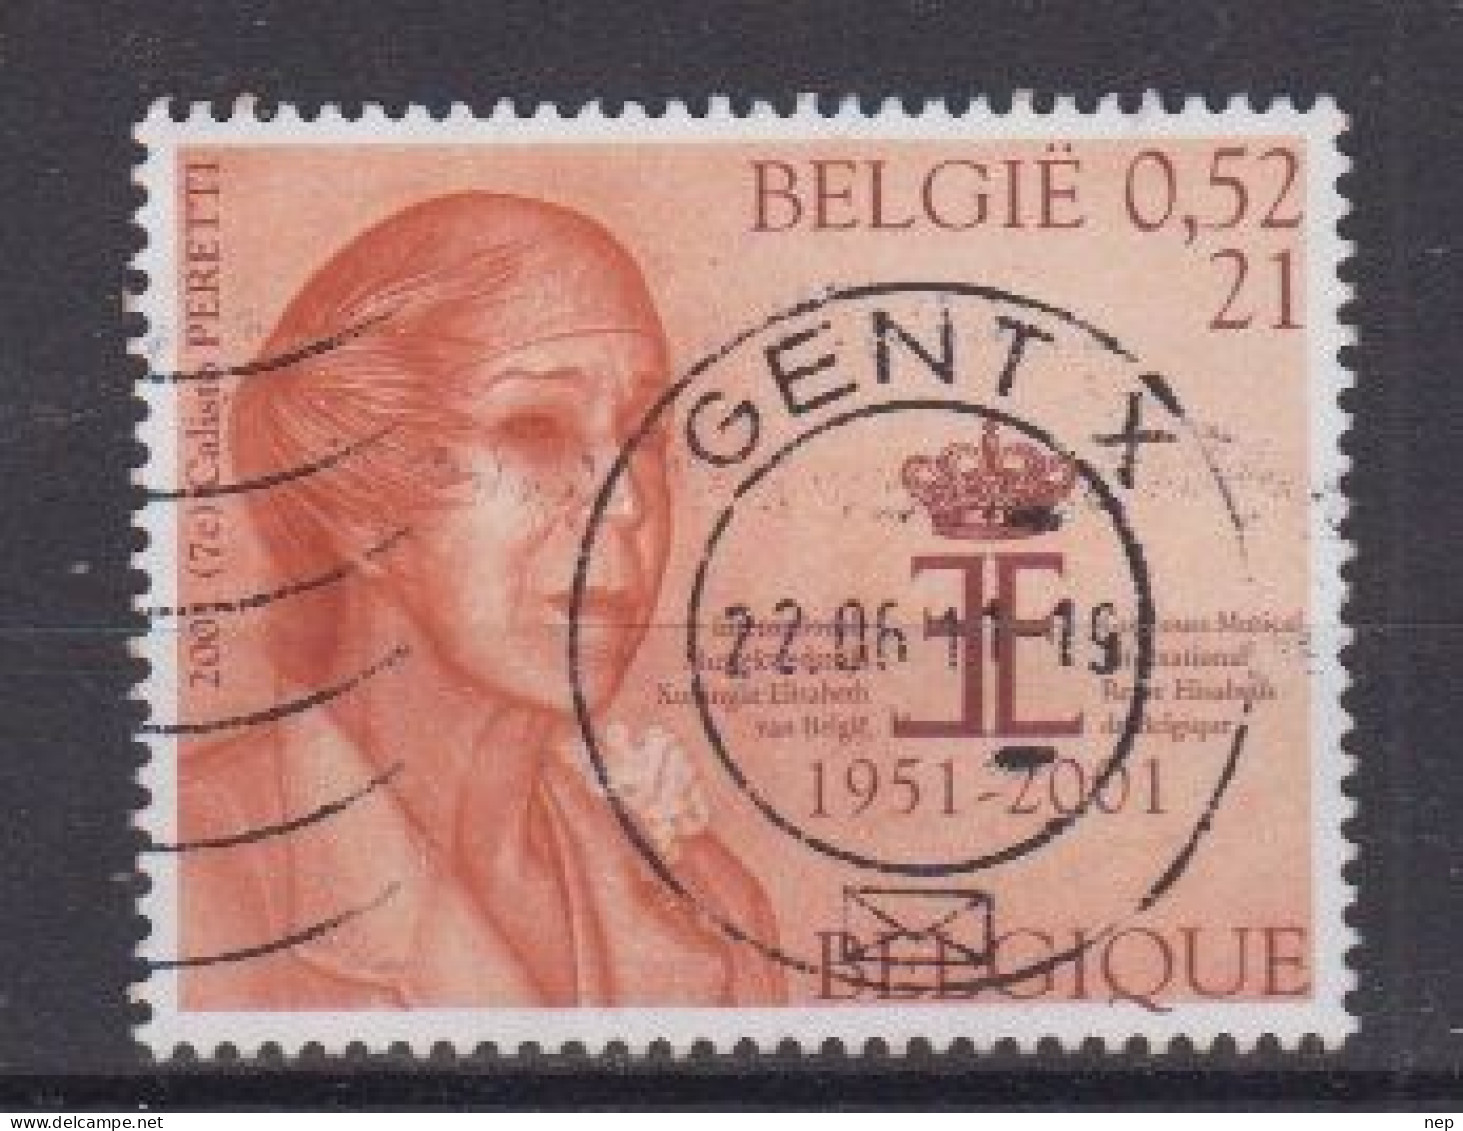 BELGIË - OPB - 2001 - Nr 2992 (GENT) - Gest/Obl/Us - Used Stamps